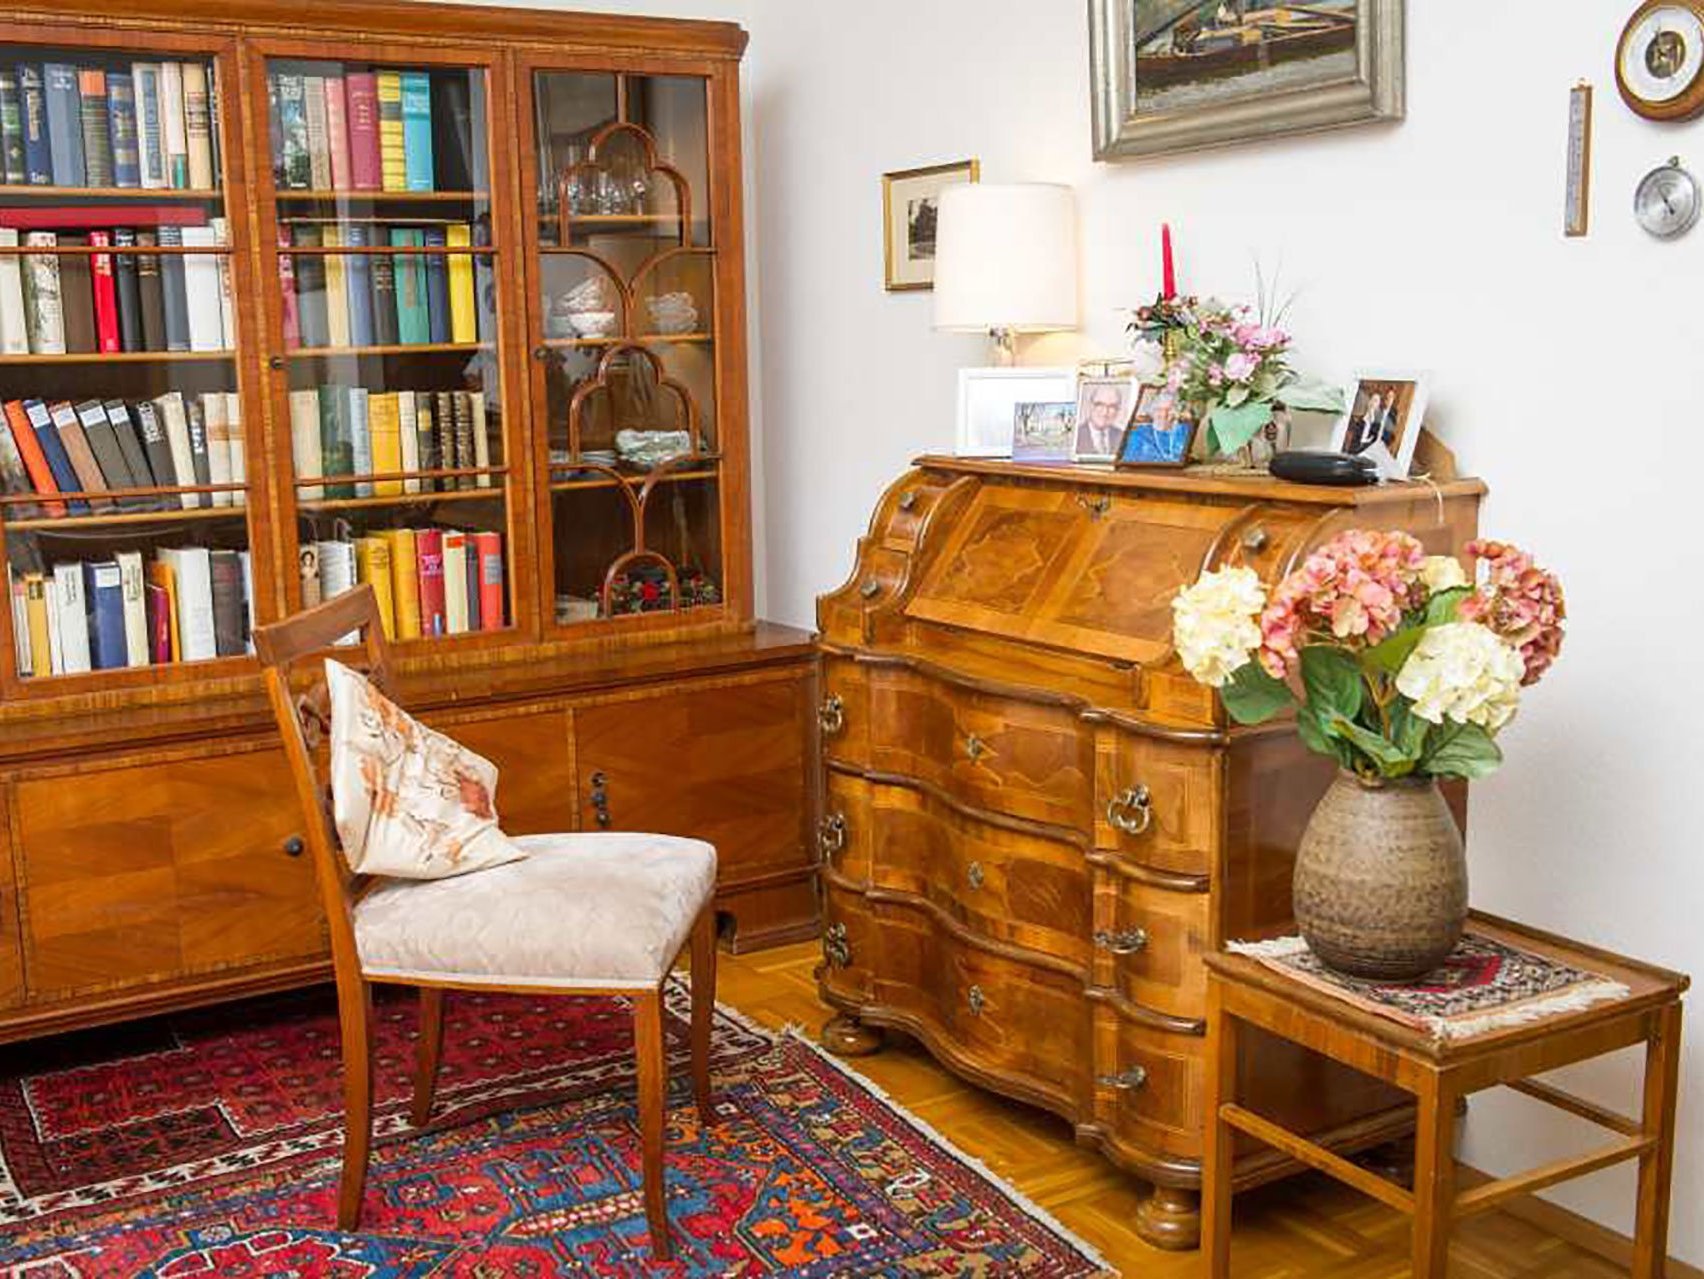 Edel eingerichtetes Zimmer mit Sekretär, Holzvitrine mit vielen Büchern und Geschirr